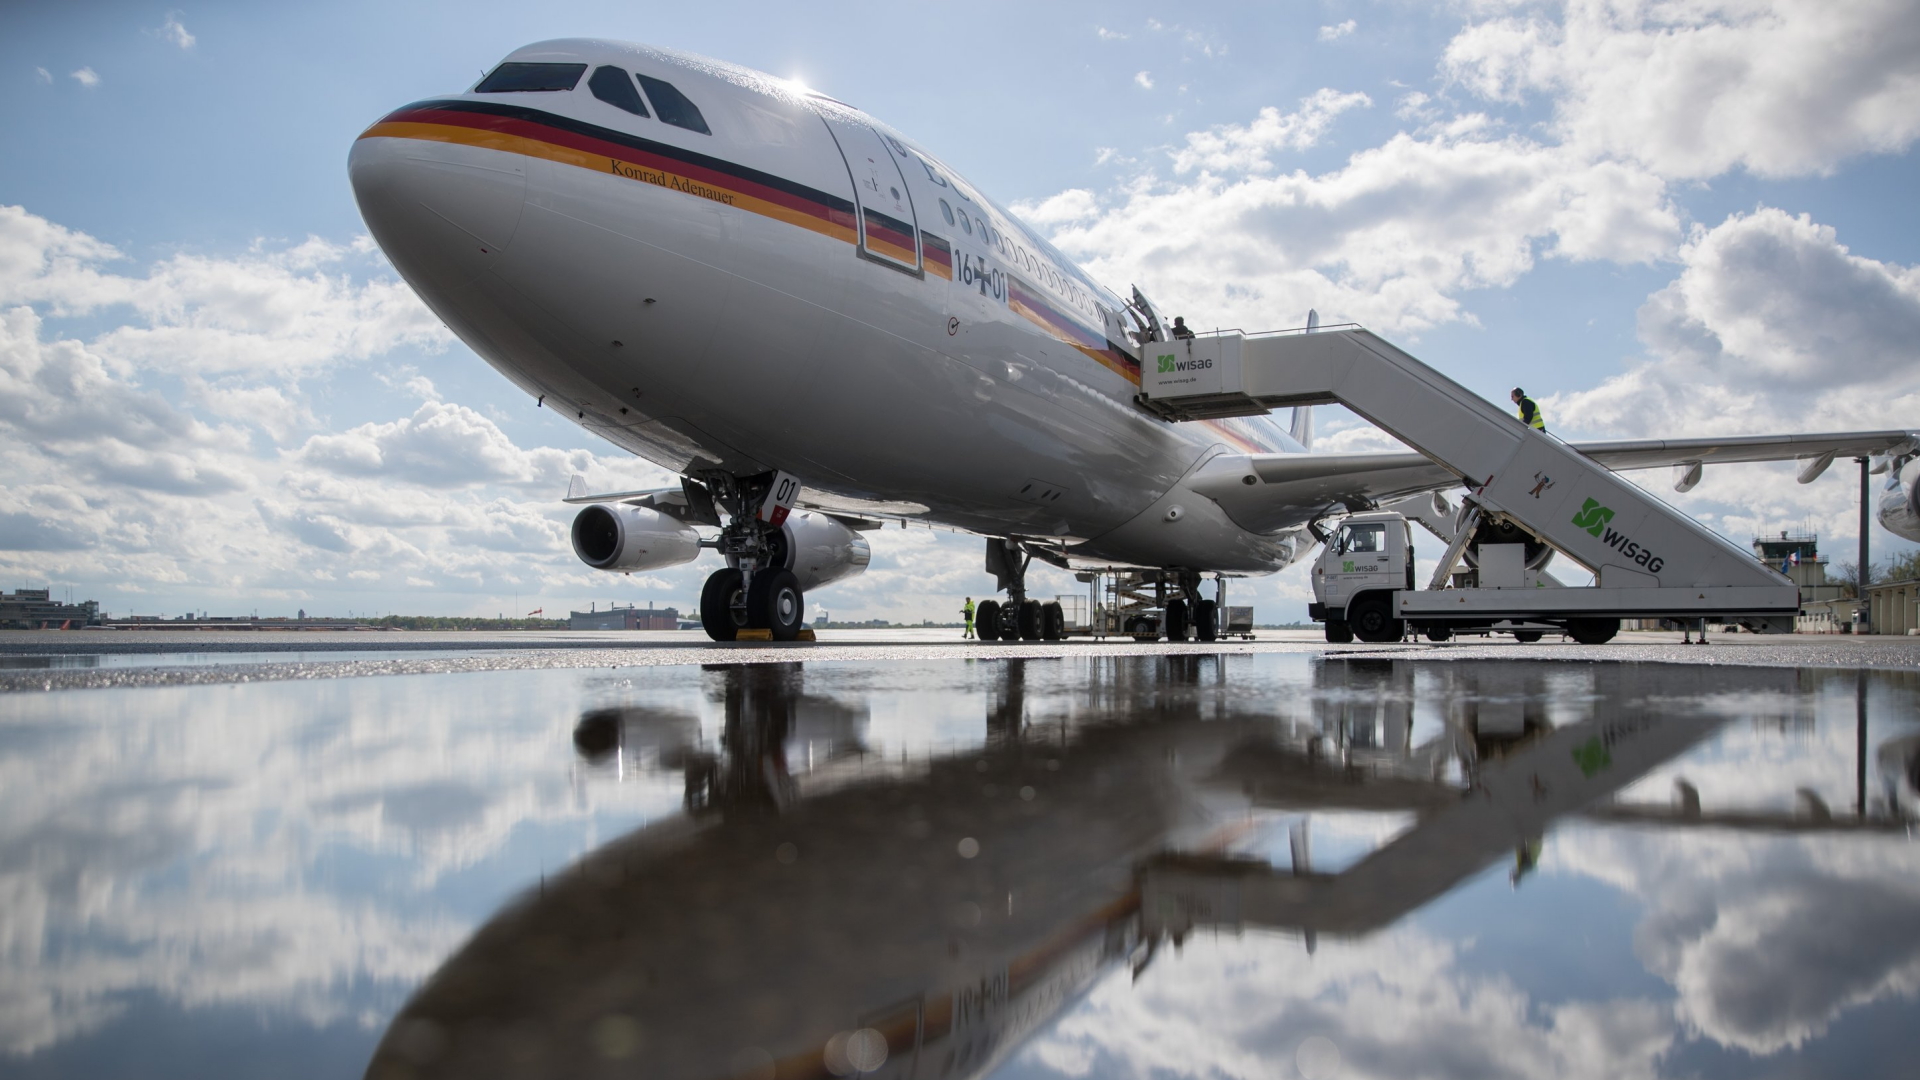 Das Regierungsflugzeug "Konrad Adenauer" steht auf dem Flughafen Berlin-Tegel | Bildquelle: dpa